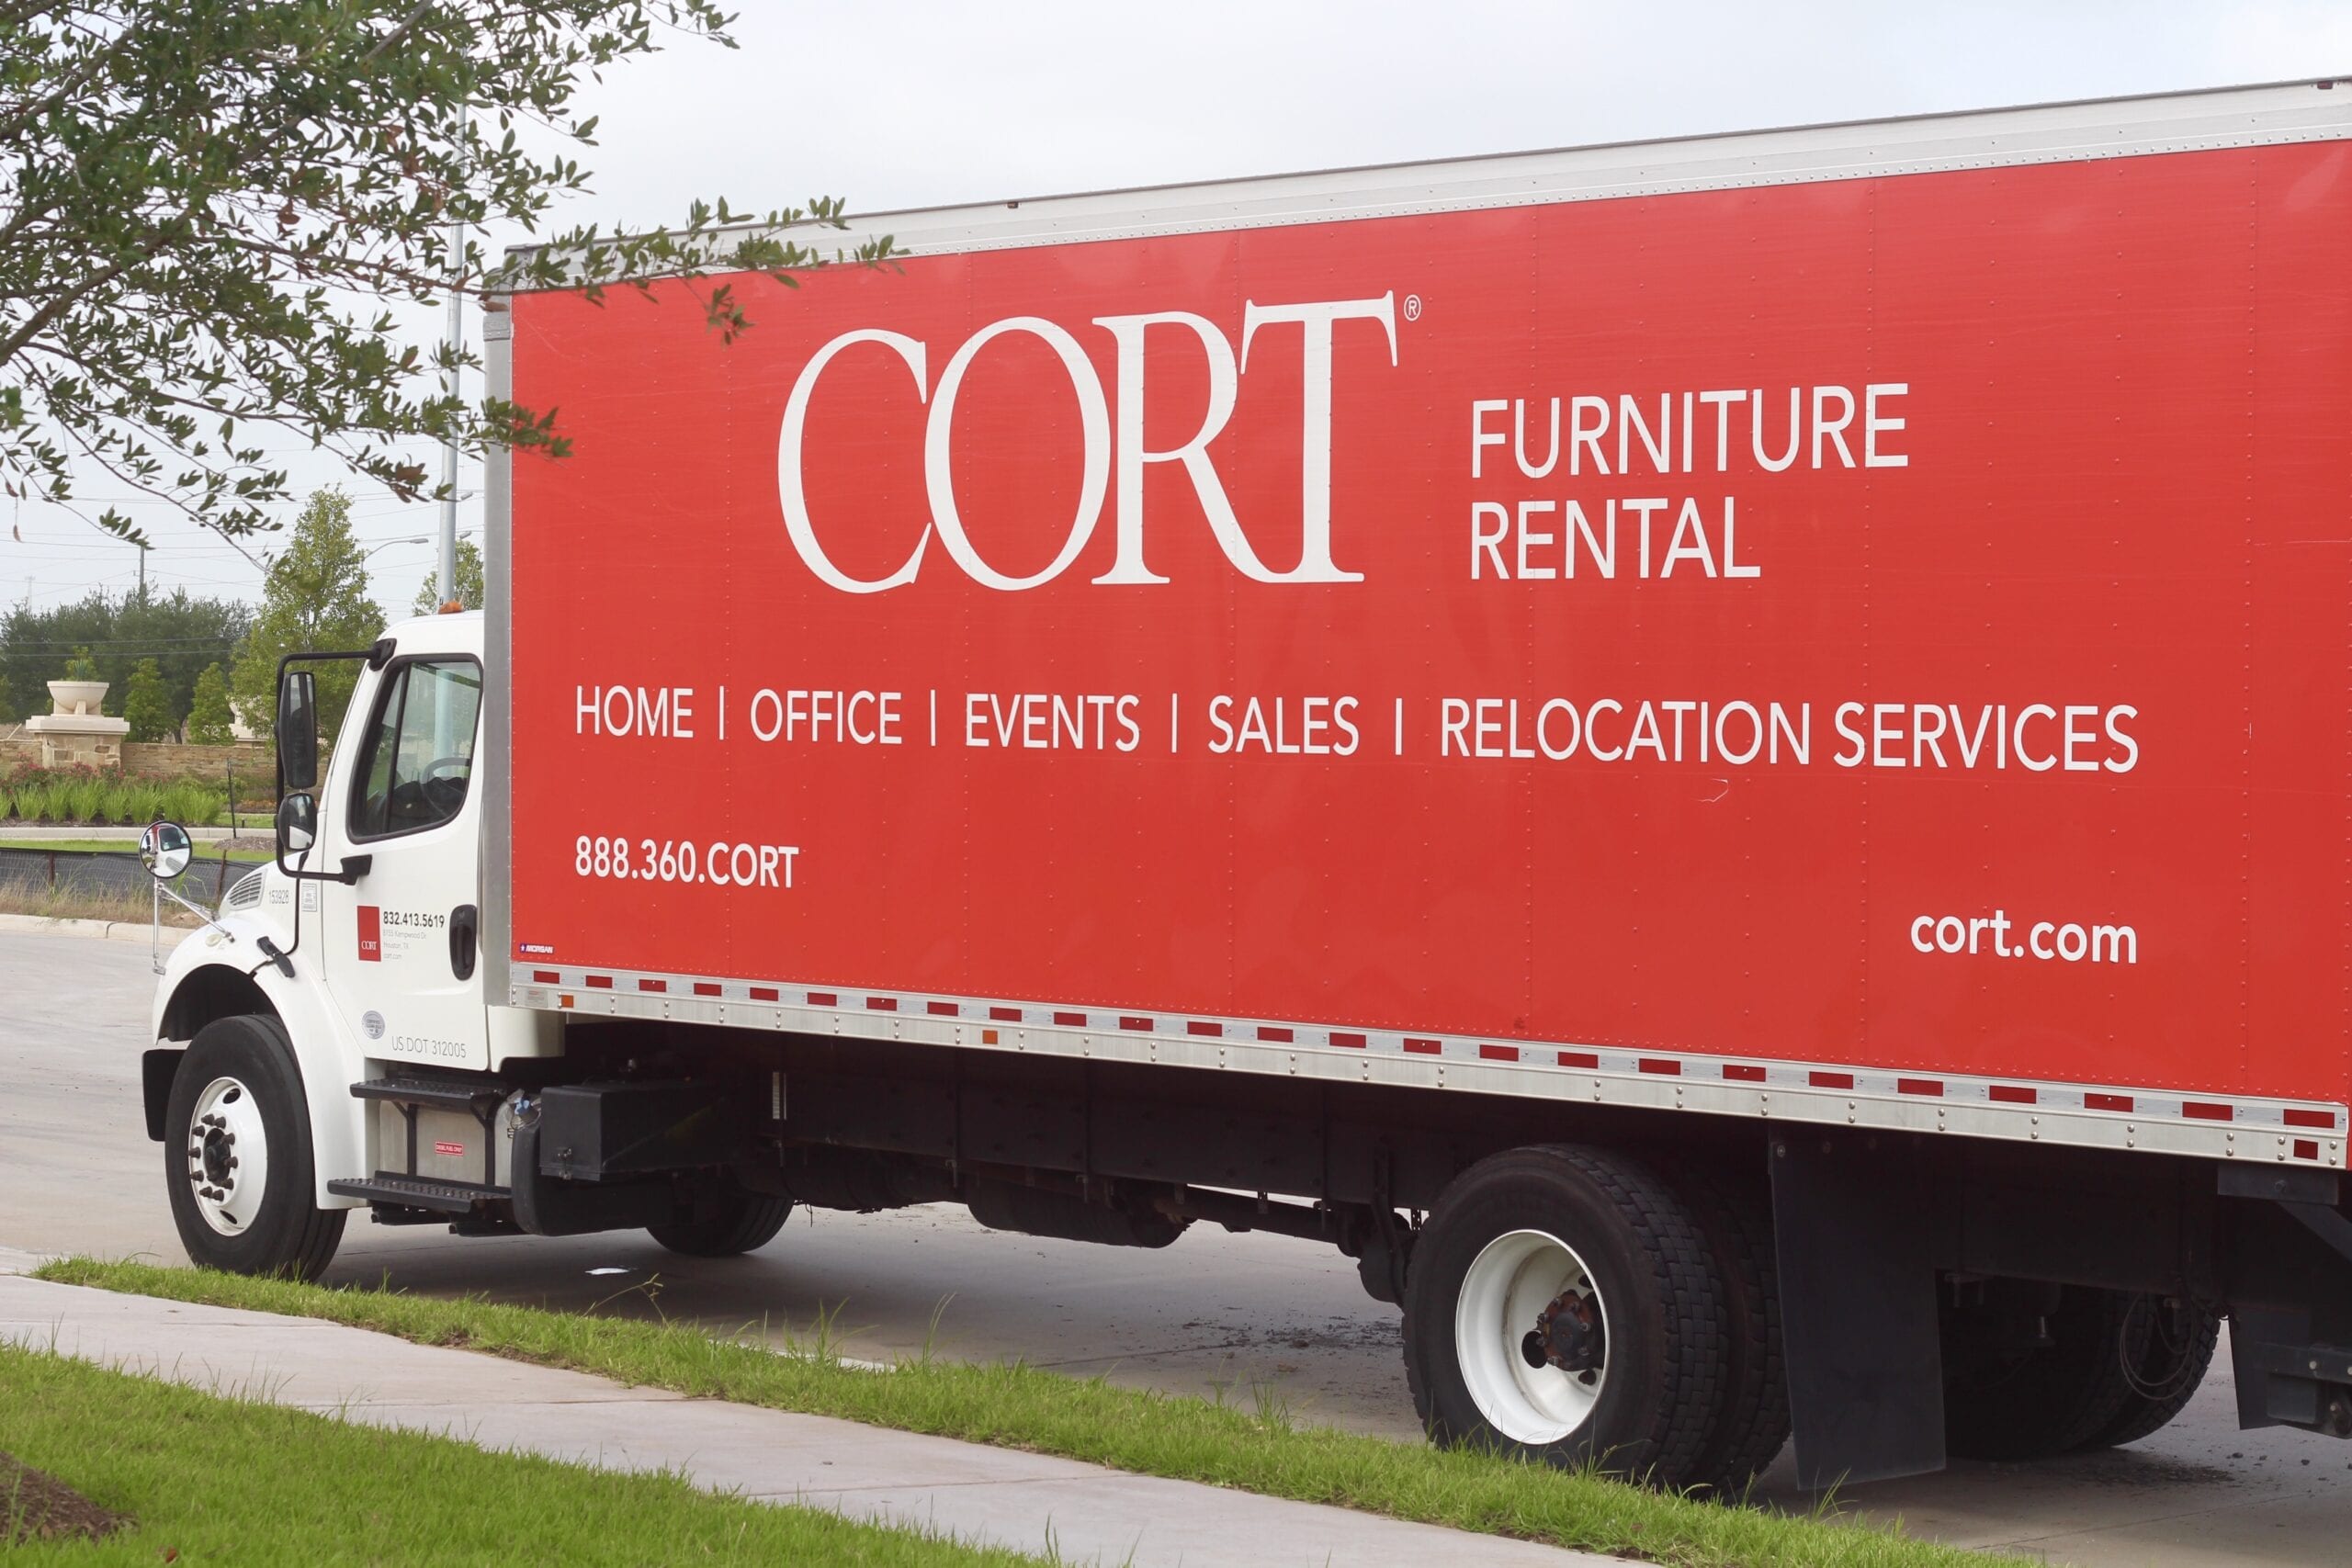 CORT Furniture Rental | The B Werd